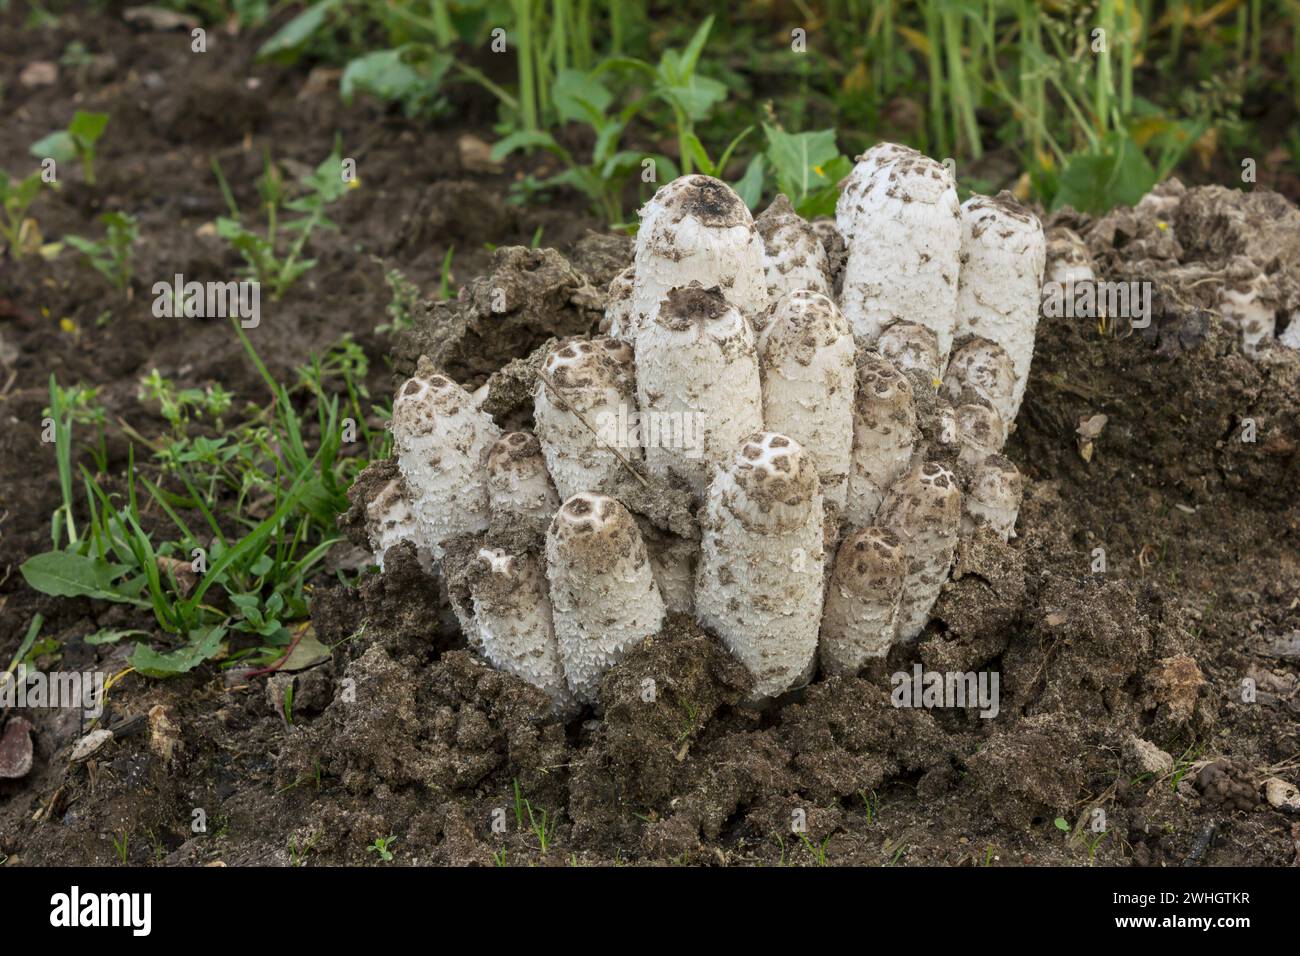 Aus dem Boden gekrochen coprinus comatus Pilze, die im Garten wachsen Stockfoto